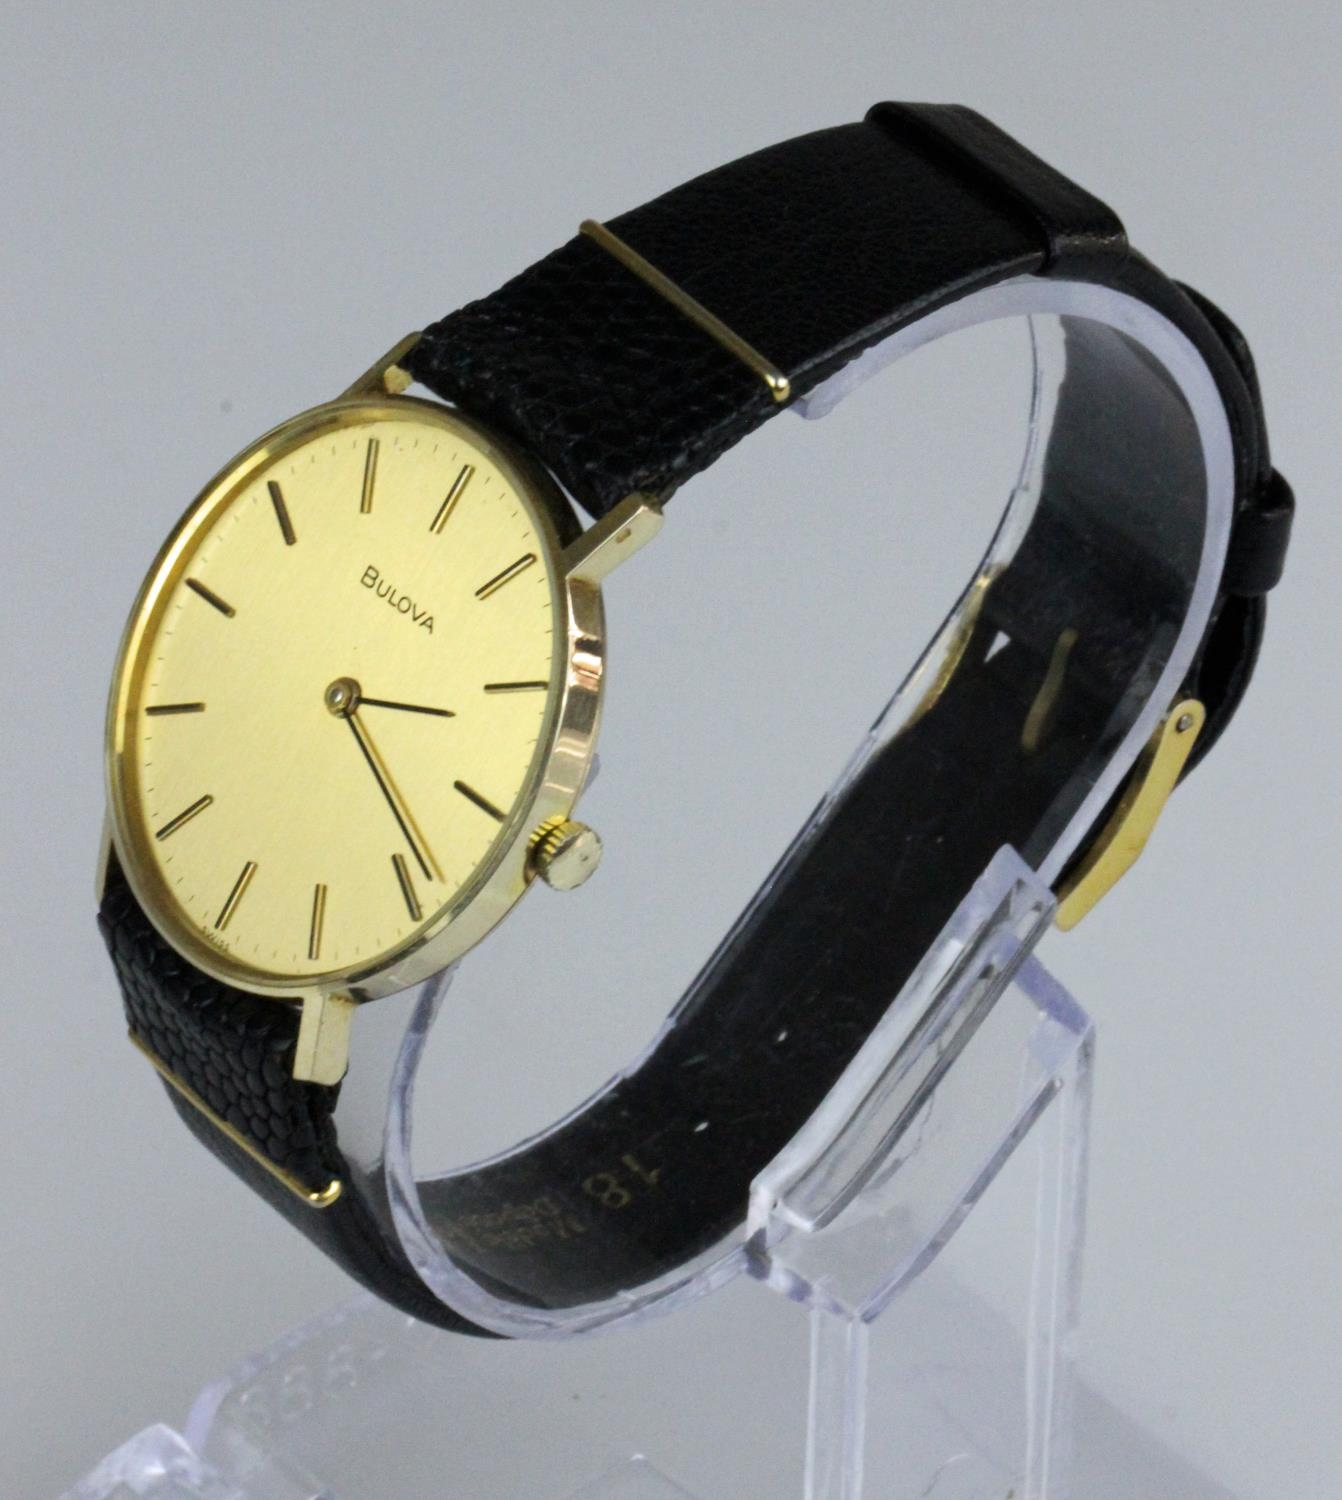 Beautiful 9ct Gold Bulova Wristwatch circa 1982. Bulova - A 9ct gold wristwatch, circa 1982, the - Image 2 of 6